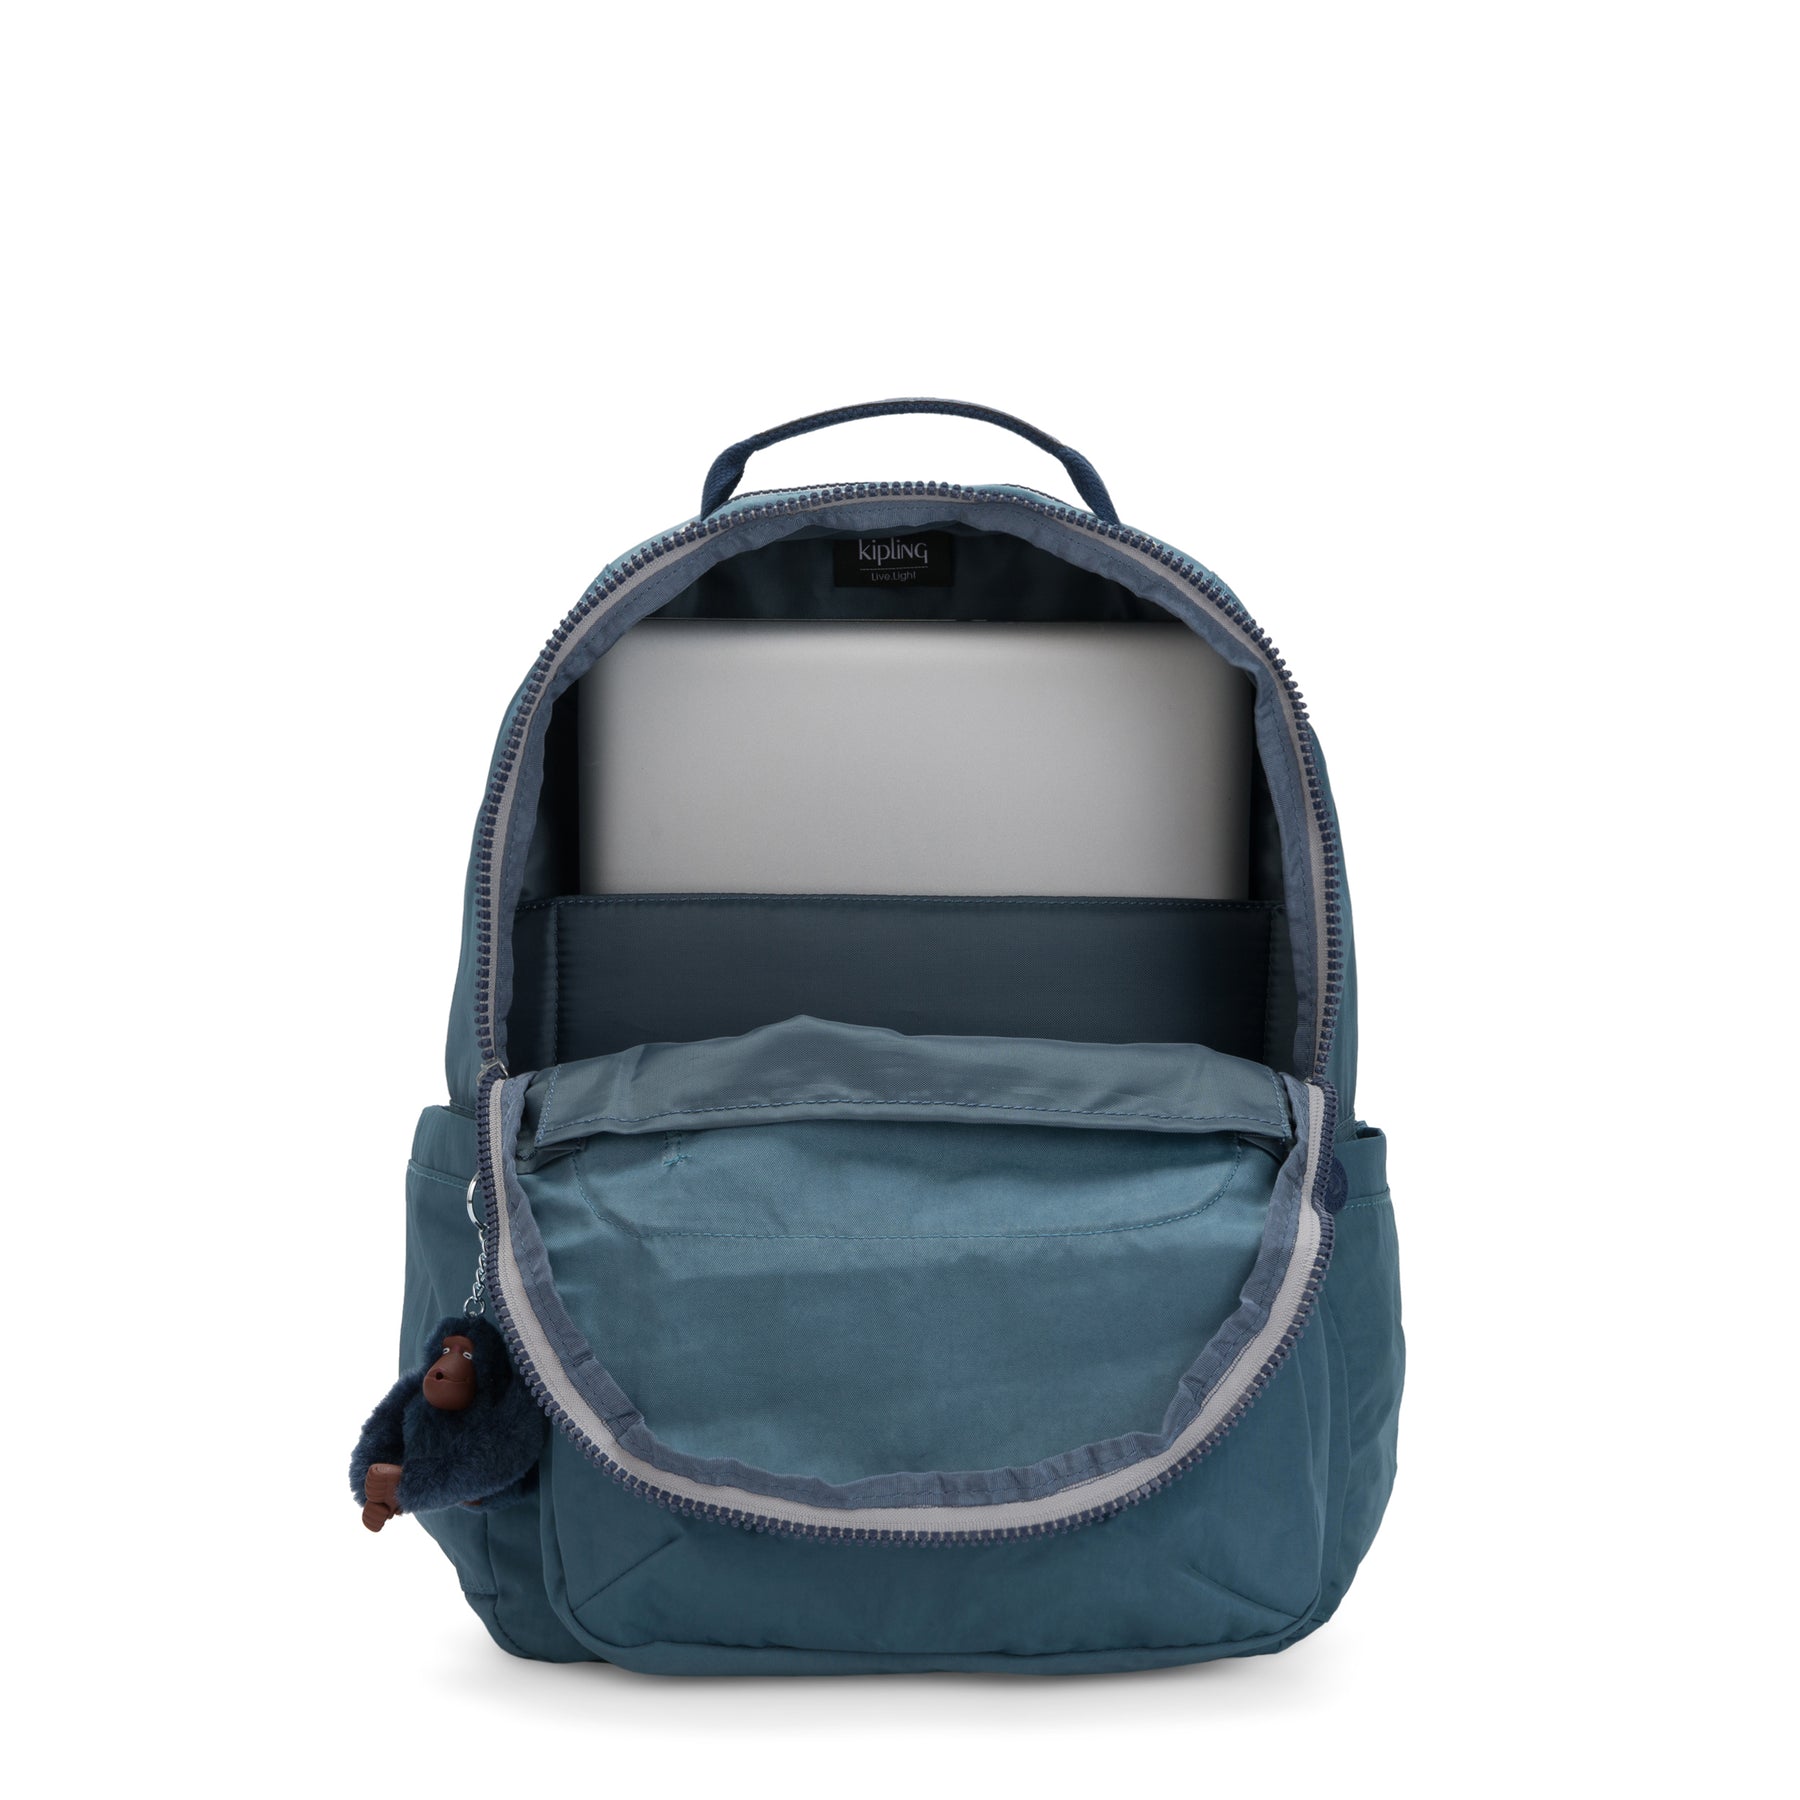 Kipling UAE Official Online Store | Handbags, Backpacks & Luggage